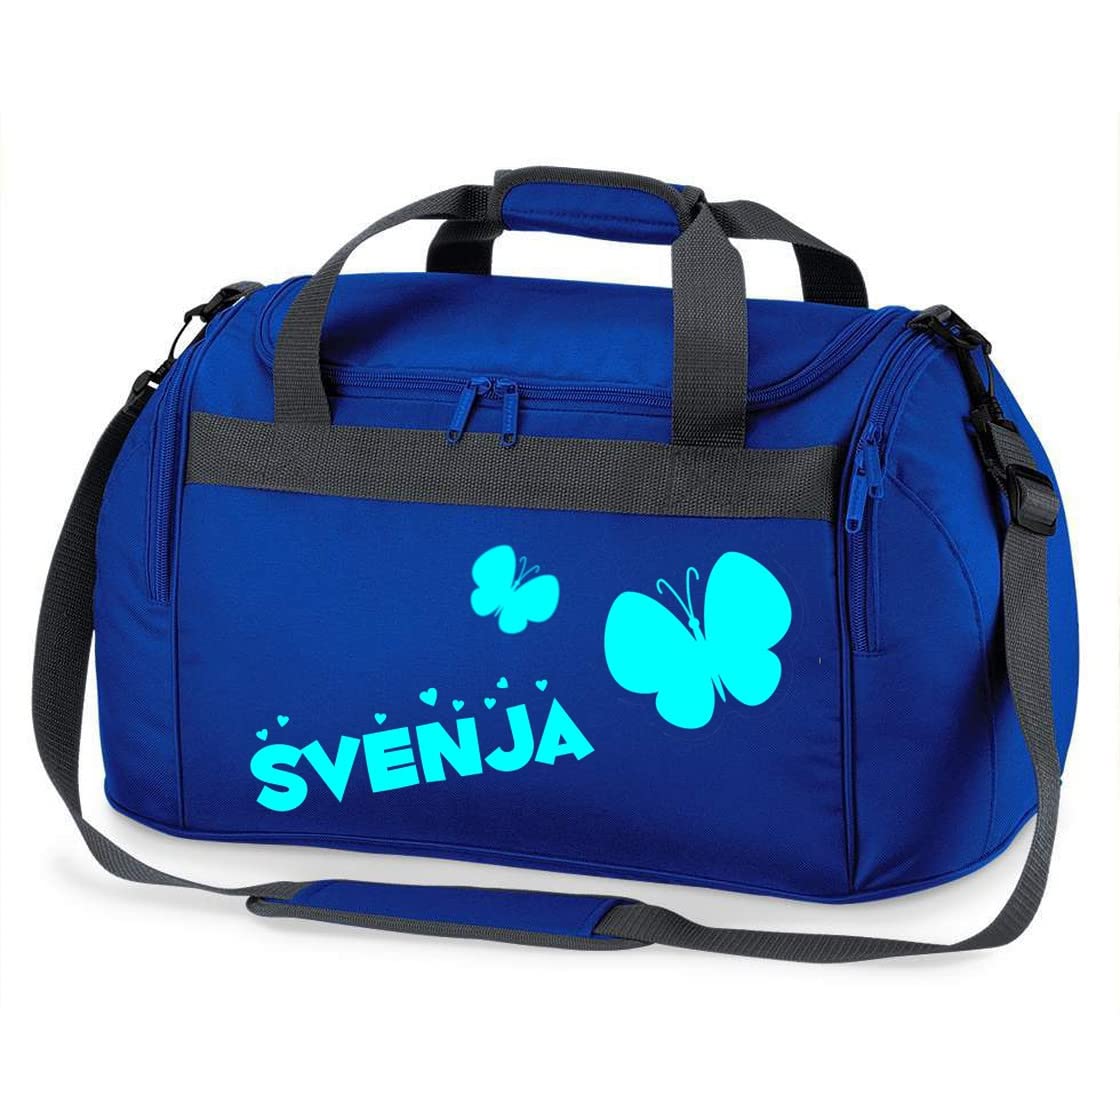 Kinder-Sporttasche mit Namen Bedruckt | Personalisierbar mit Motiv Schmetterling | Reisetasche Duffle Bag für Mädchen in Pink, Blau, Grün (Royalblau)